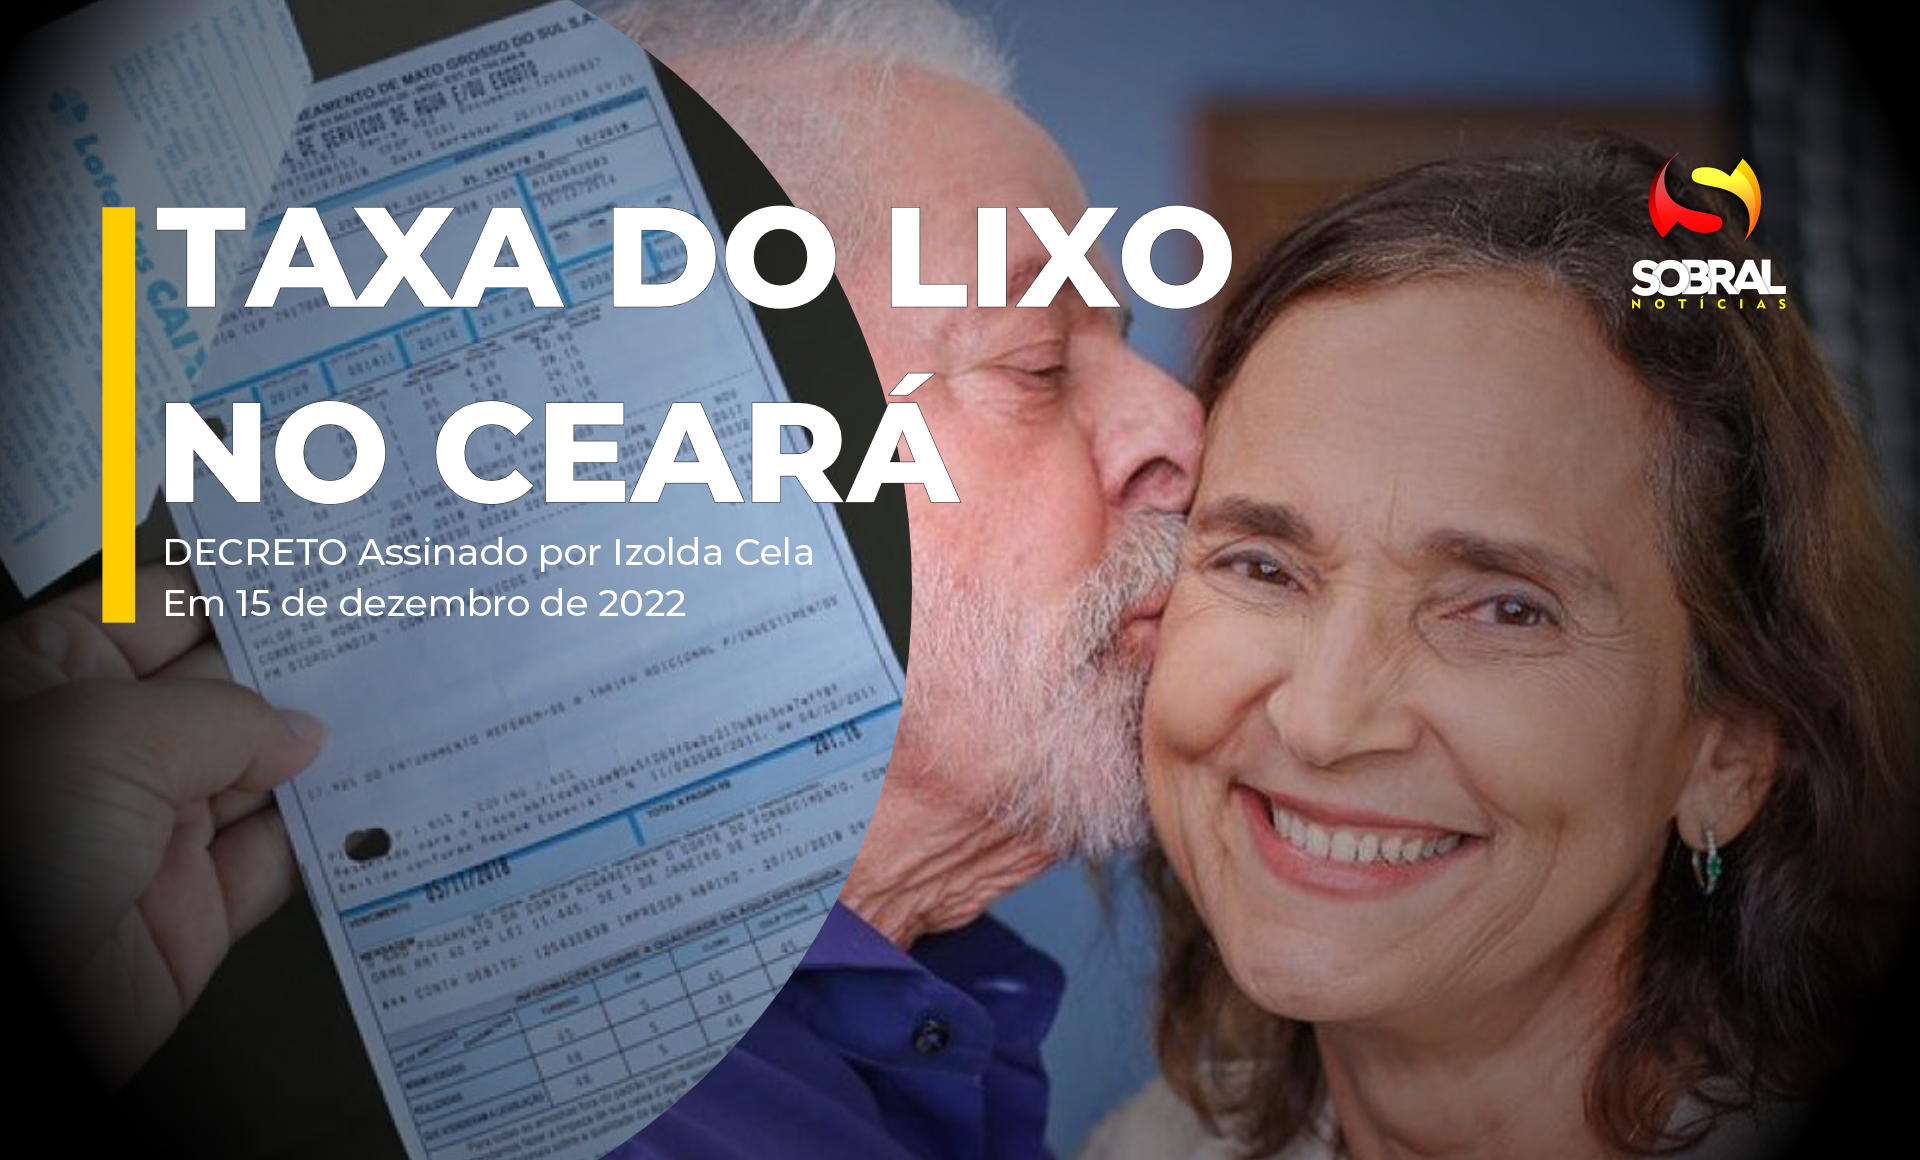 Izolda Cela e o decreto do Lixo no Ceará